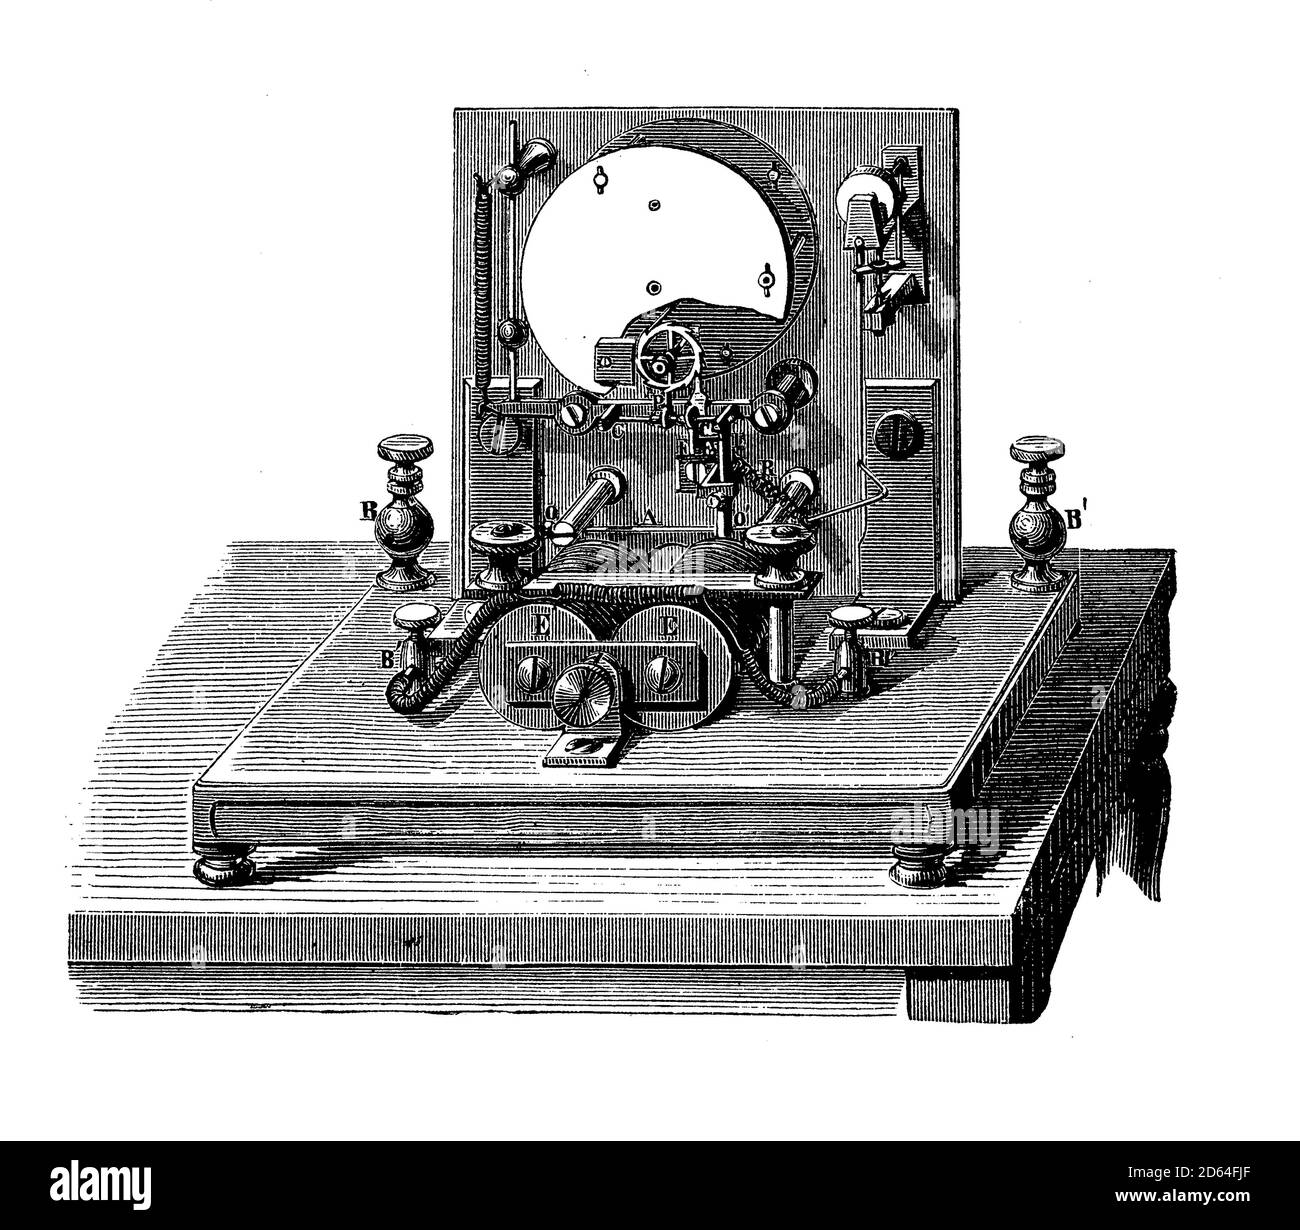 Vintage-Technologie: Detail des Wheatstone-Zeigertelegraphen von 1839 mit einem Zeiger, der den übertragenen Buchstaben aus einem Mechanismus elektrisch angetriebener Nadeln anzeigt Stockfoto